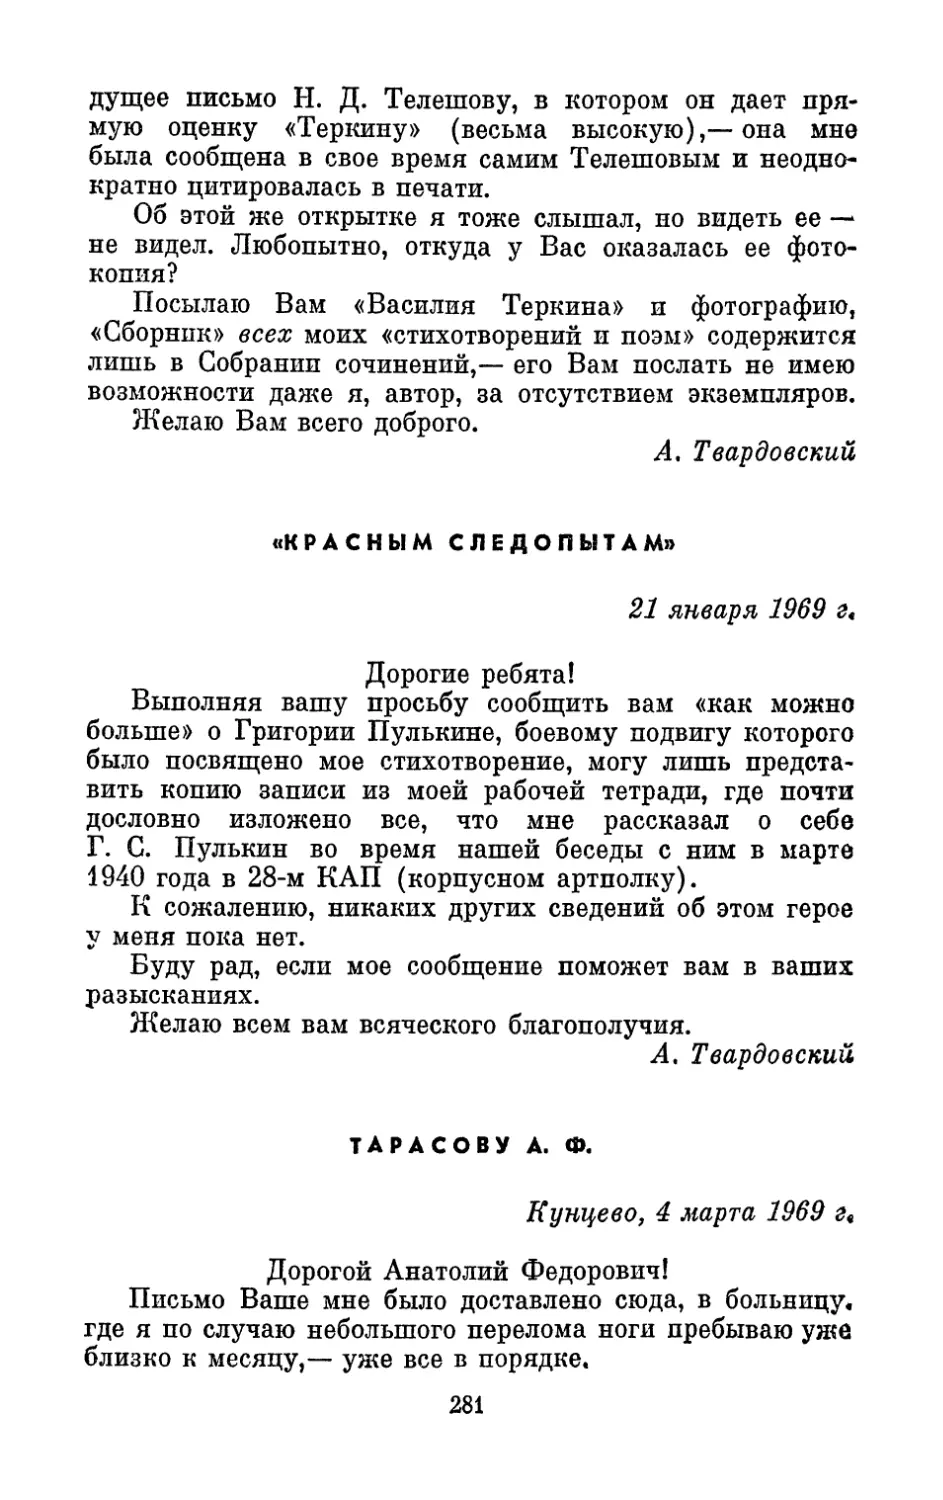 «Красным следопытам», 21 января 1969 г.
Тарасову А. Ф., 4 марта 1969 г.